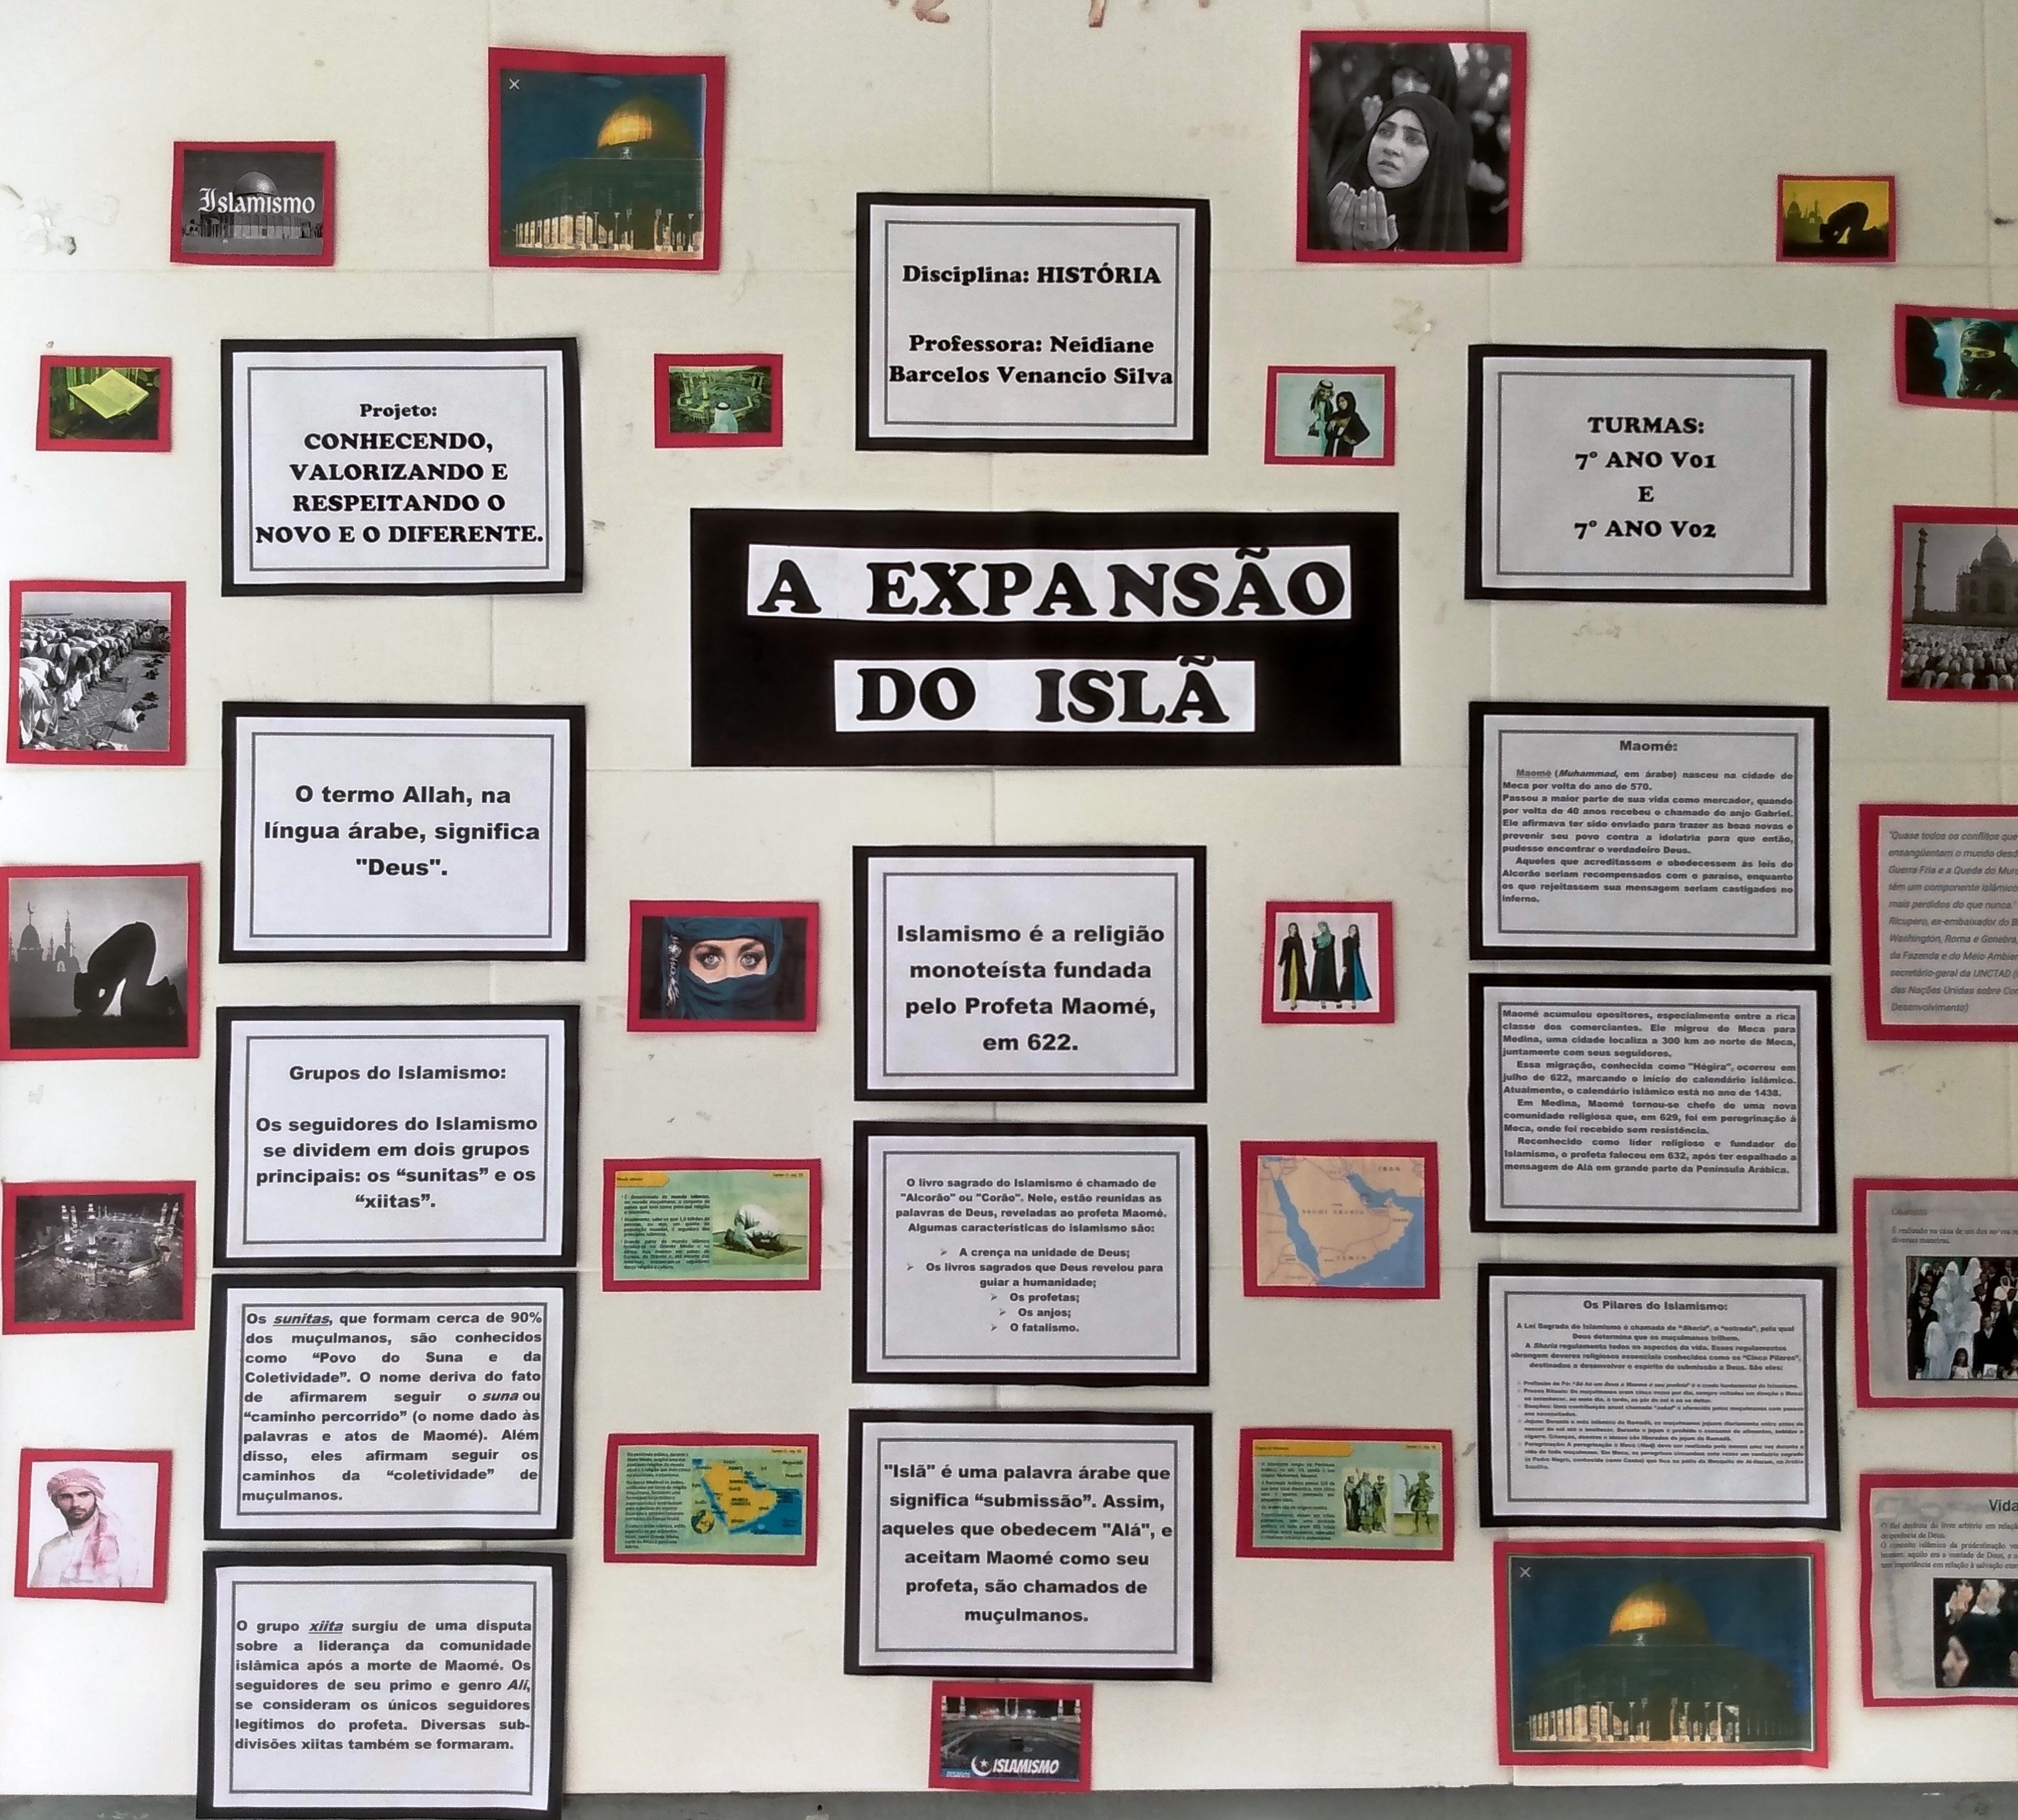 SEDU - Game ajuda a ensinar Língua Portuguesa em escola de Cachoeiro de  Itapemirim